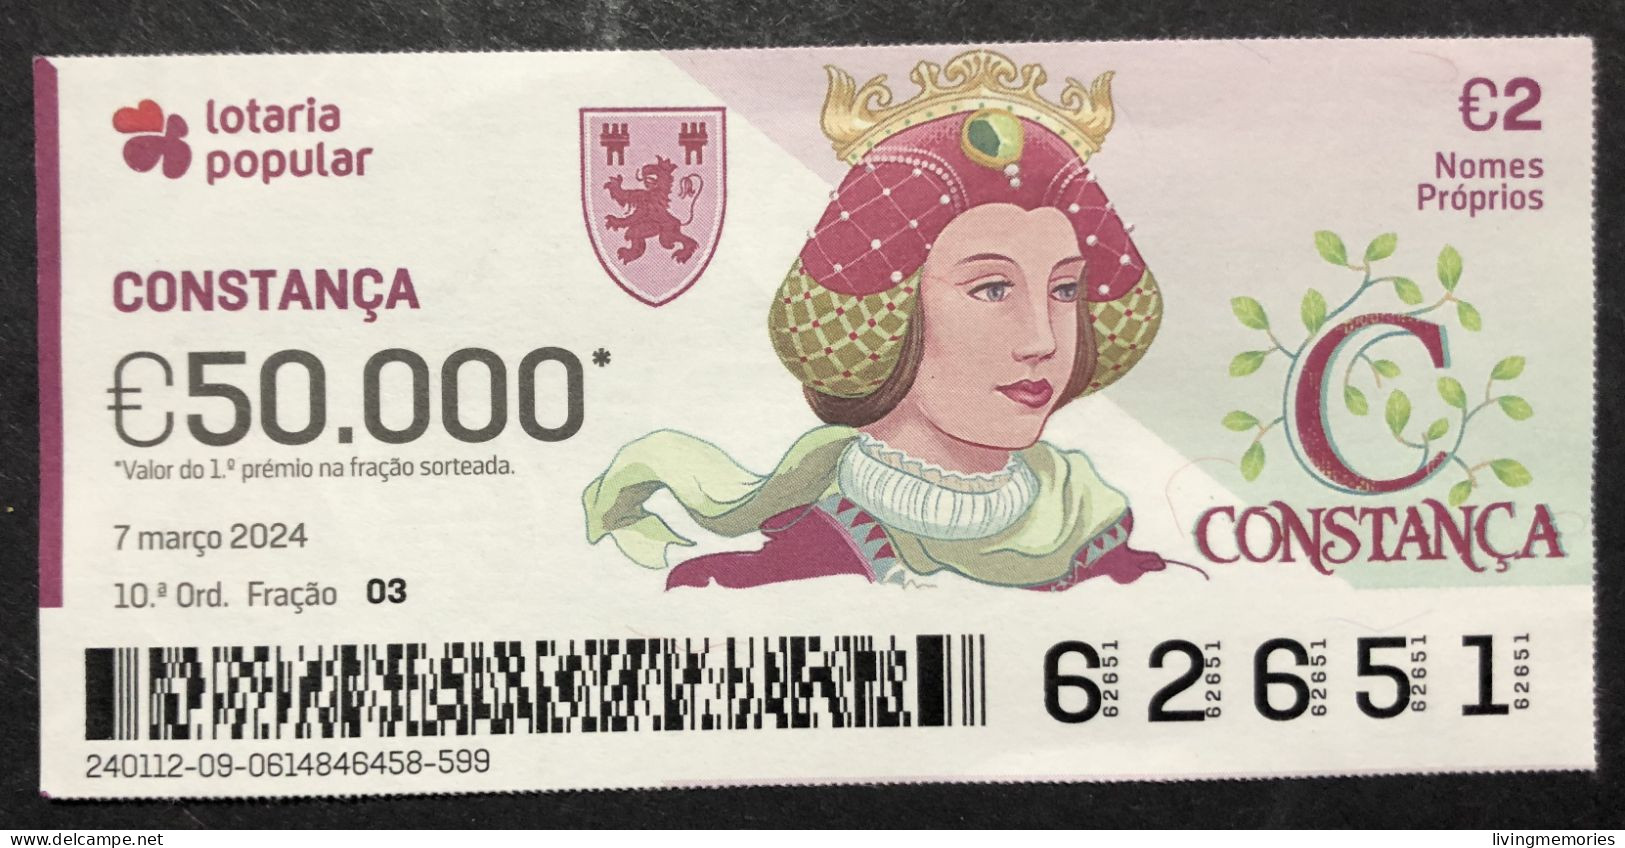 116 P, 1 X Lottery Ticket, Portugal, « NOMES Próprios: CONSTANÇA », « First NAMES: CONSTANÇA », «NOM: CONSTANÇA »,  2024 - Biglietti Della Lotteria